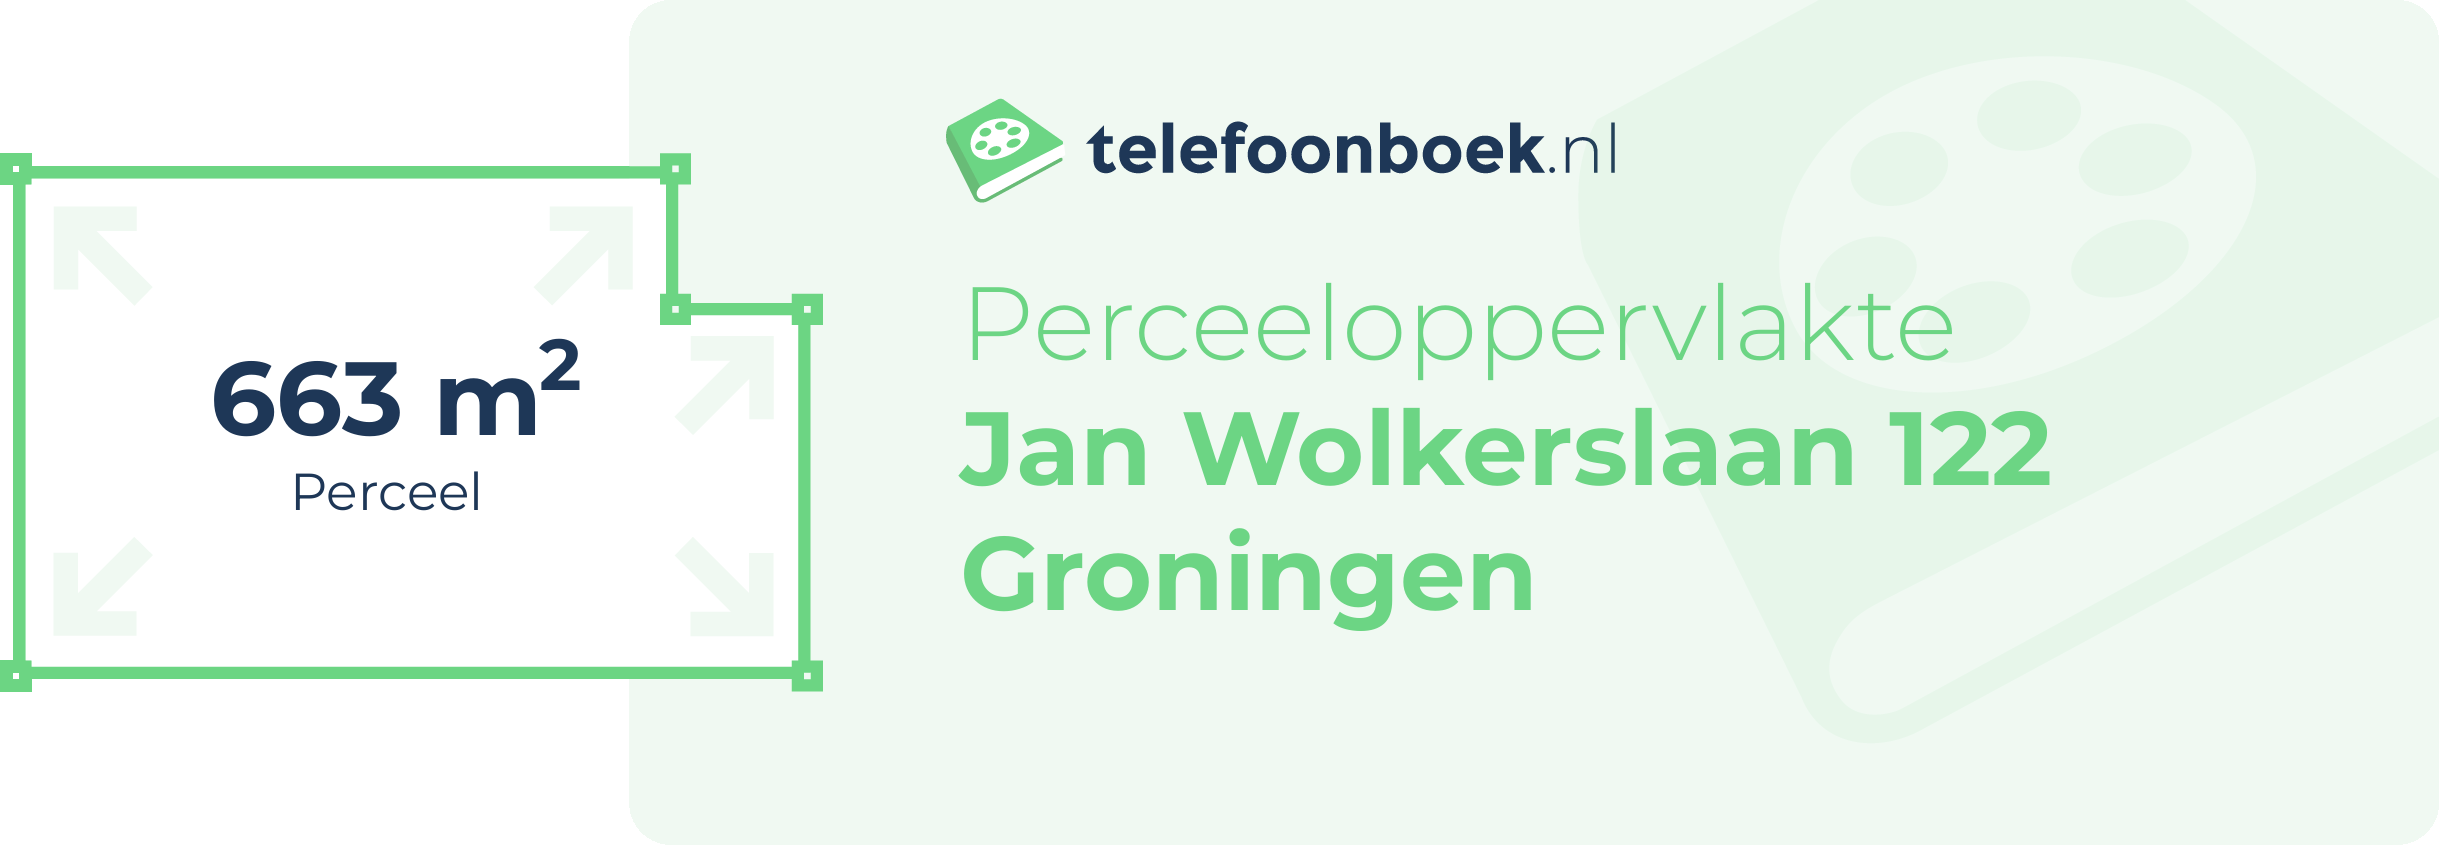 Perceeloppervlakte Jan Wolkerslaan 122 Groningen